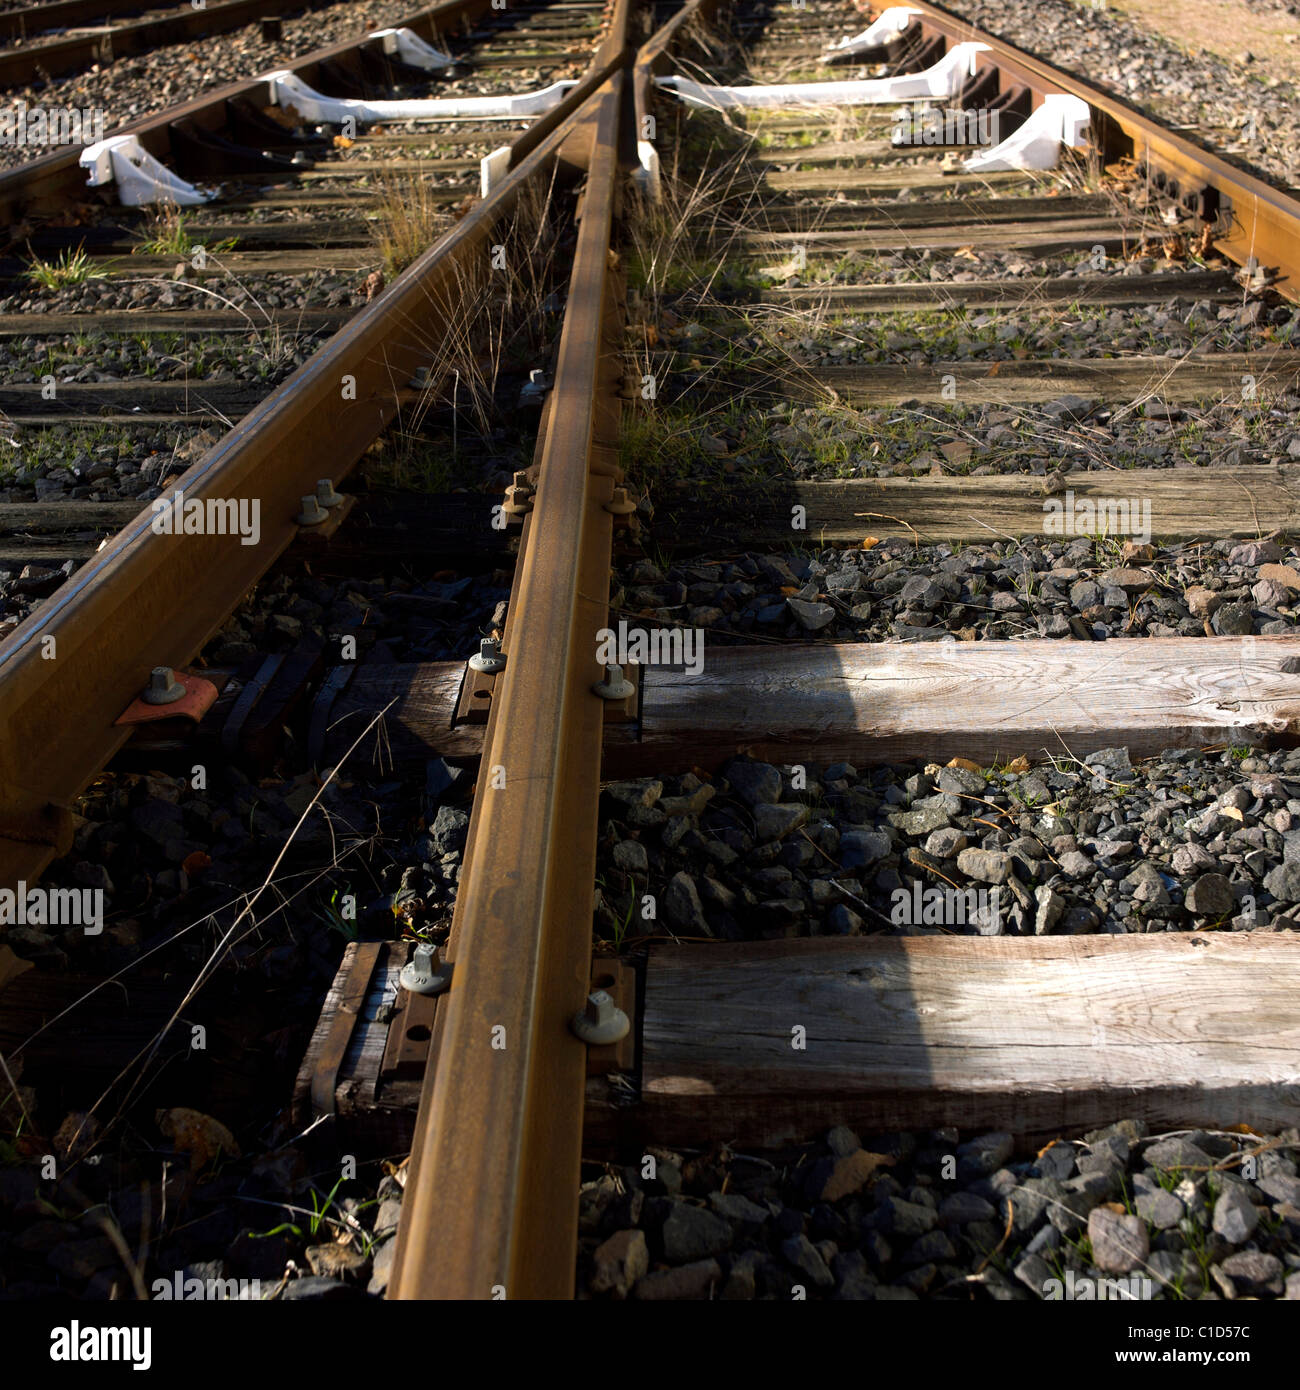 Voie de chemin de fer train tracks close up Banque D'Images